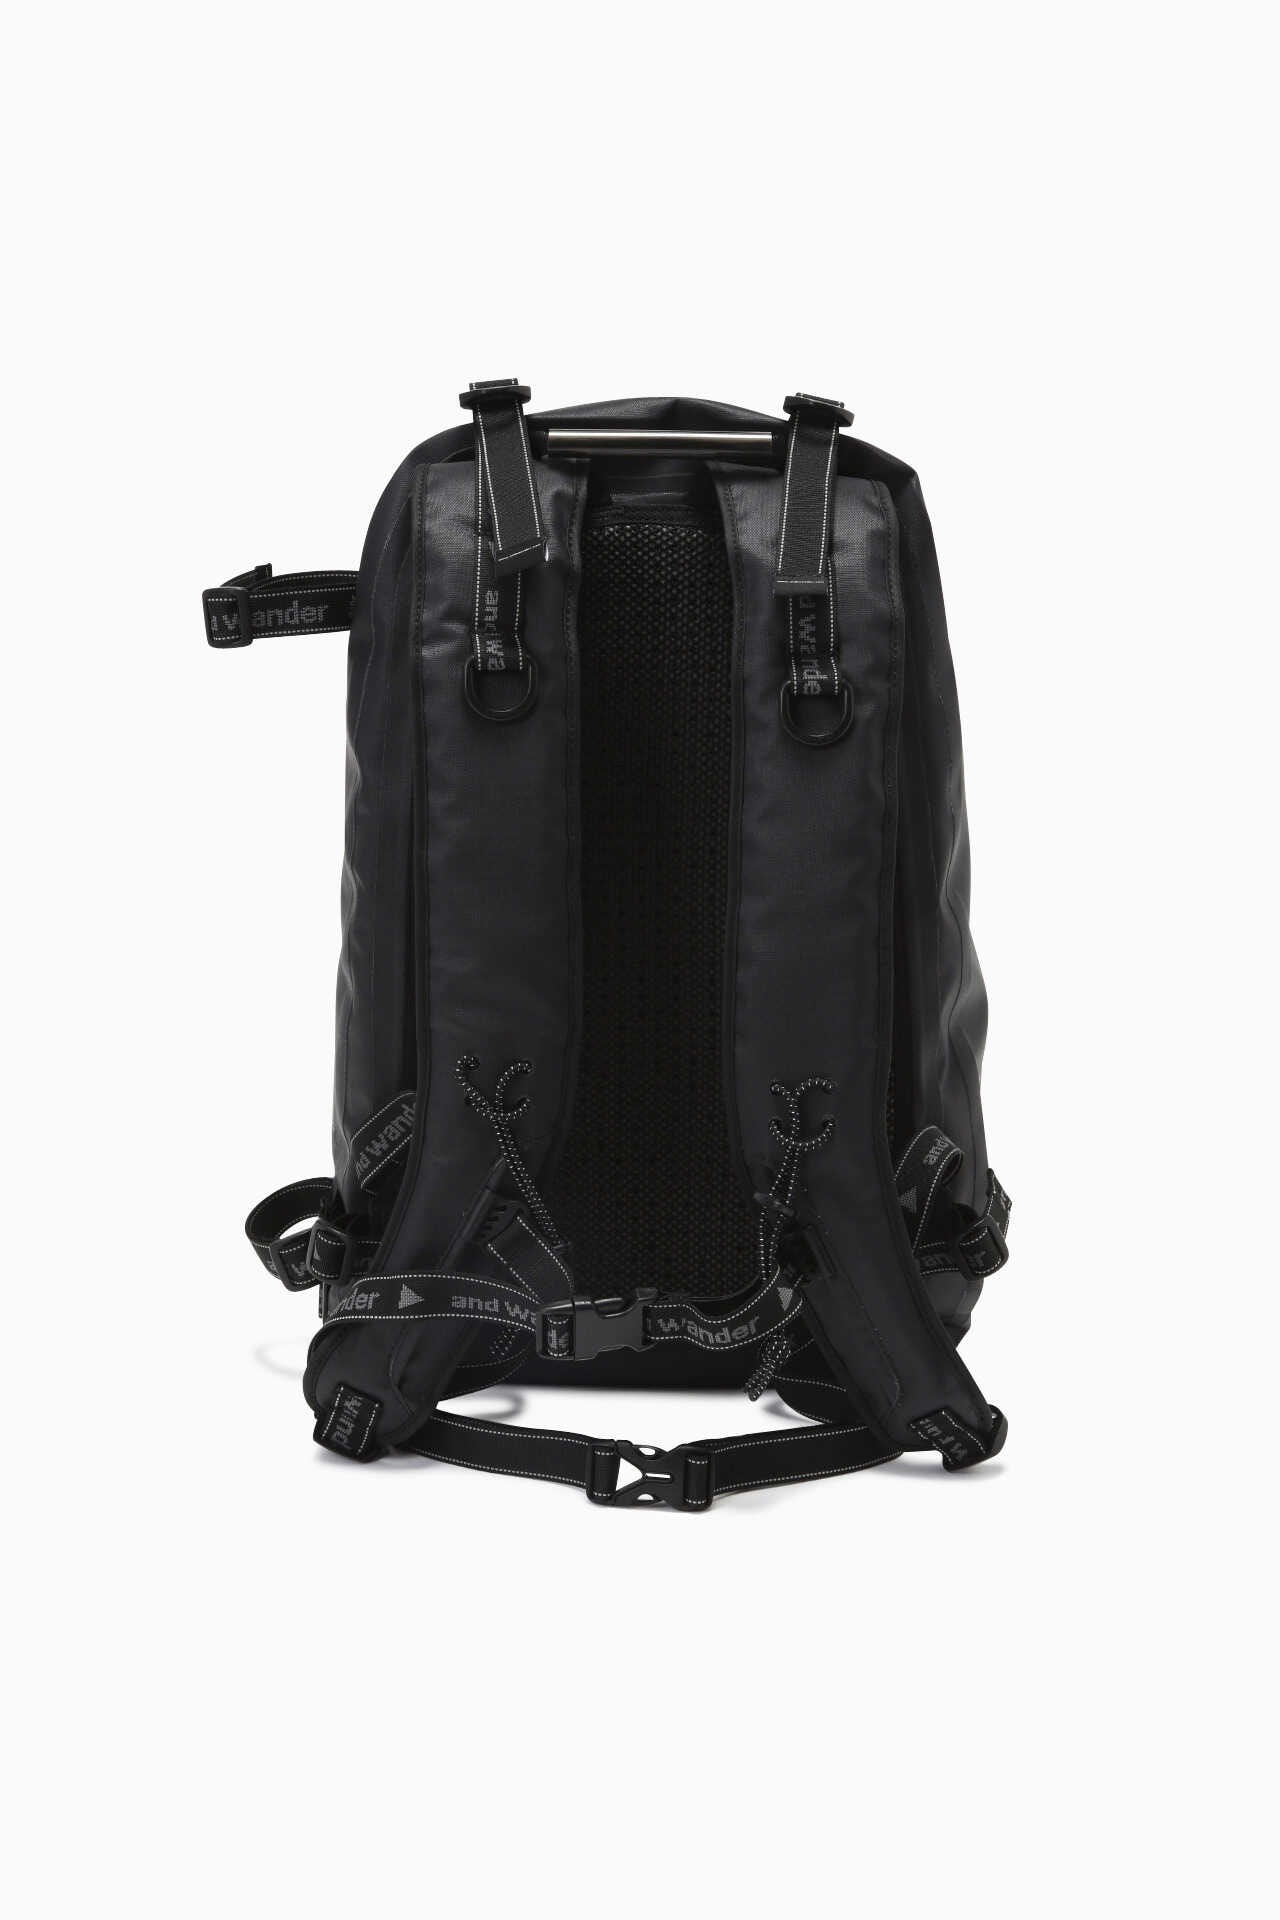 新品and wander waterproof daypack 20Lバッグパック